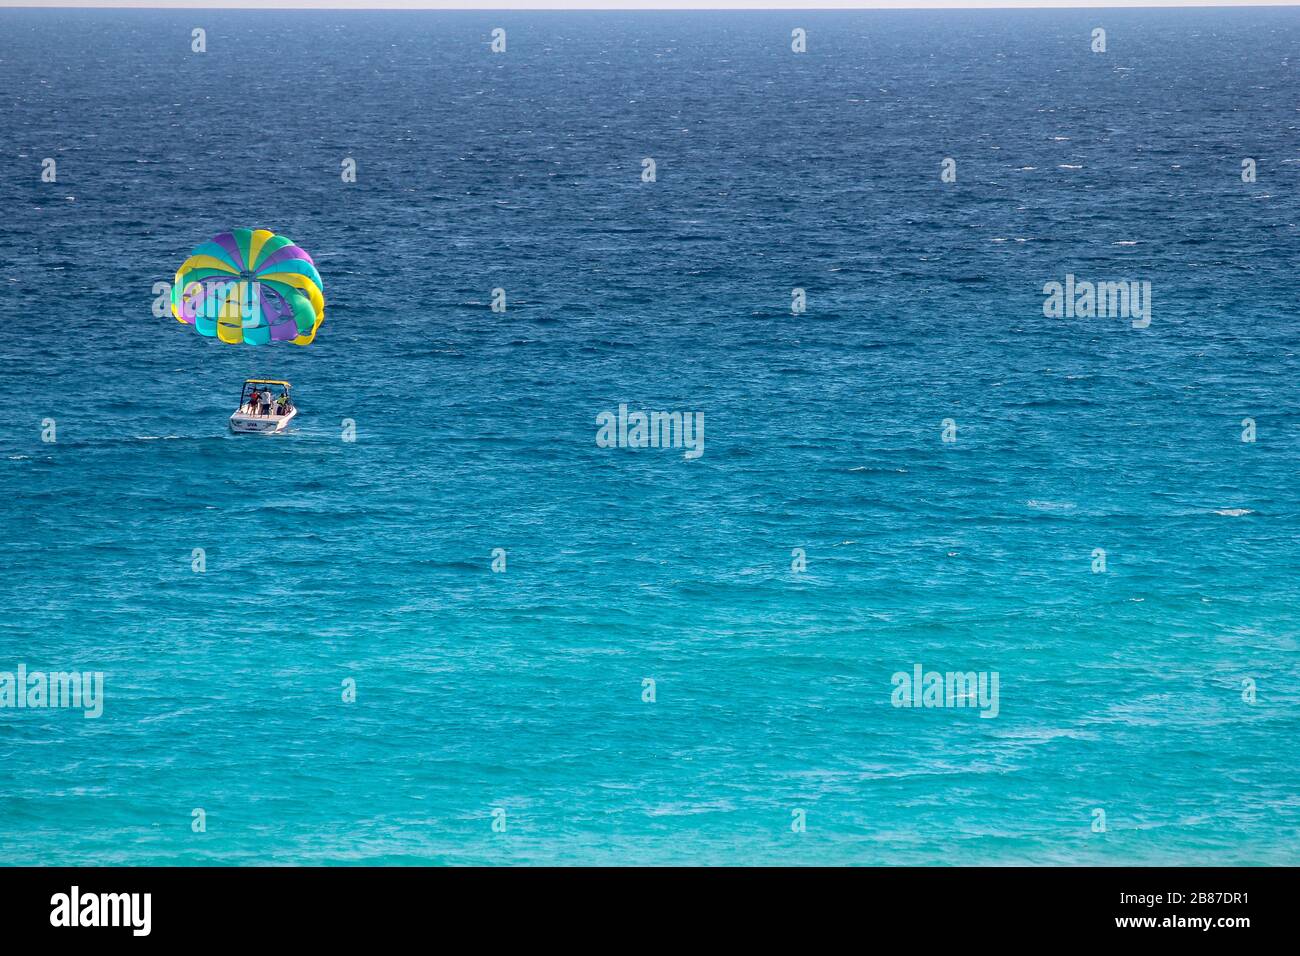 Paravelismo en las aguas de una playa en la Zona Hotelera, Cancún, Quintana Roo, Península de Yucatán, México Foto de stock